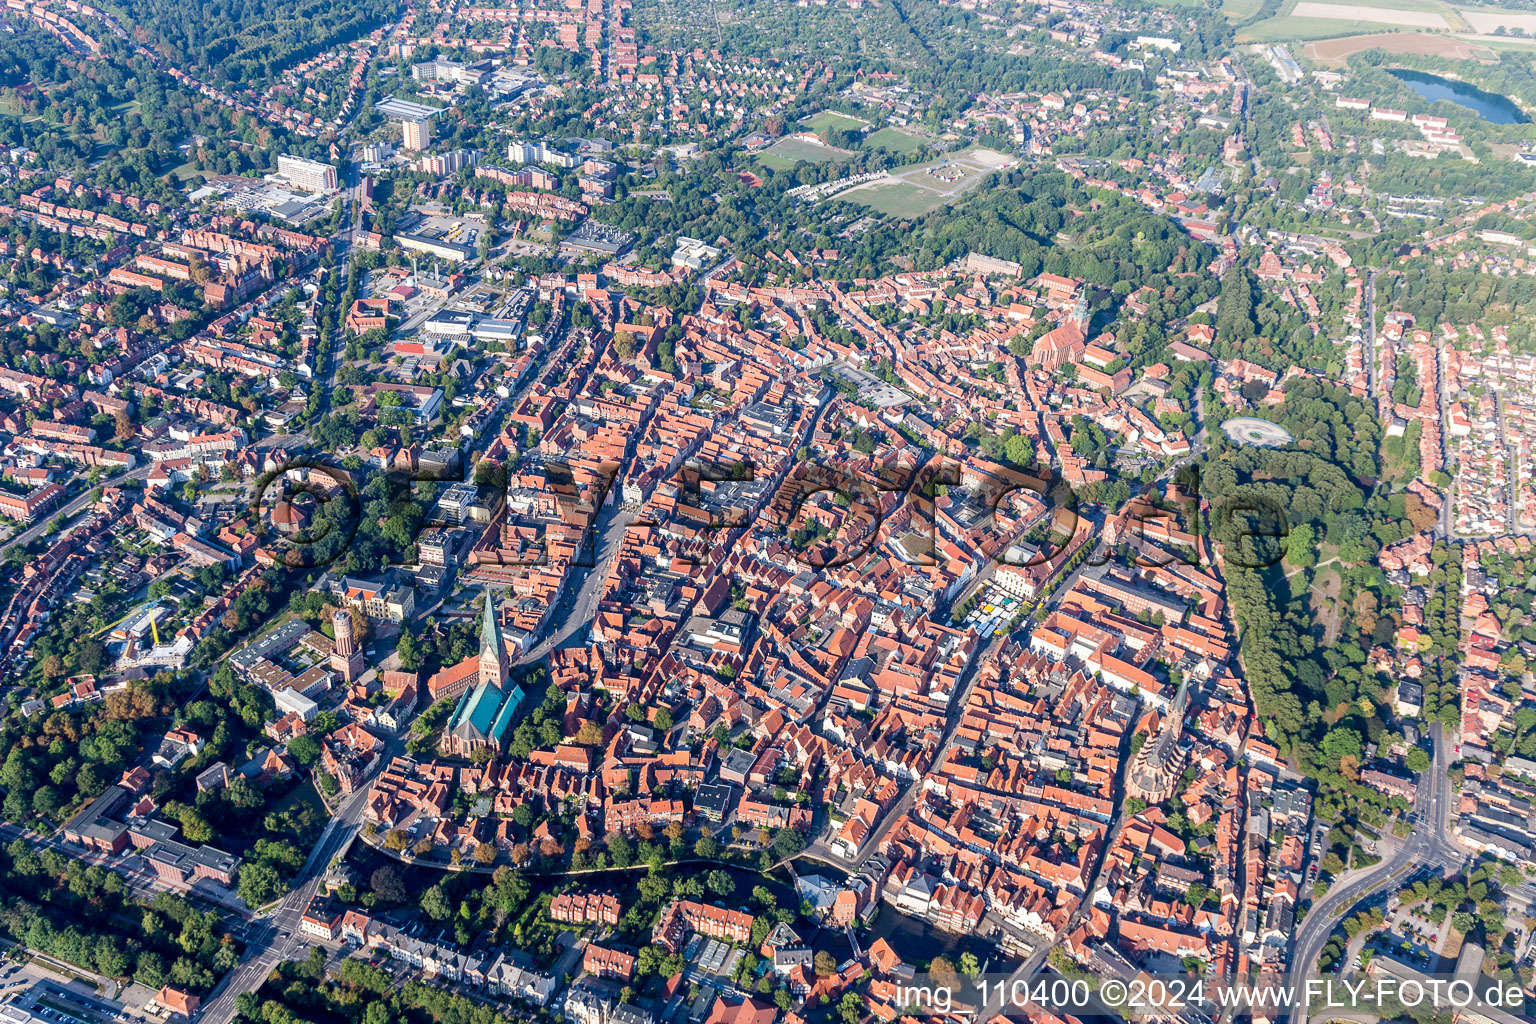 Luftbild von Altstadtbereich und Innenstadtzentrum in Lüneburg im Bundesland Niedersachsen, Deutschland